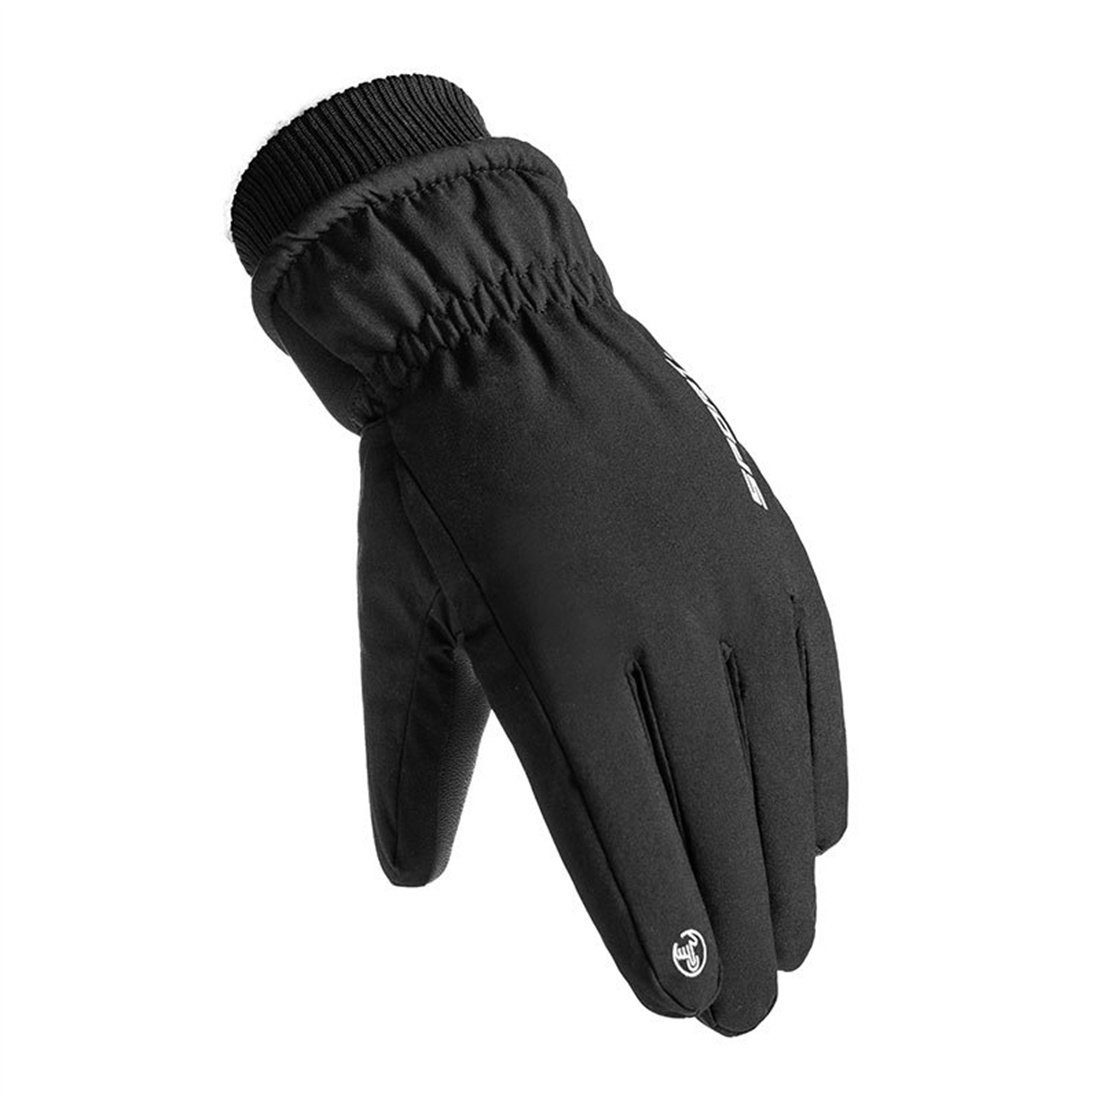 DÖRÖY Skihandschuhe Winddichte Handschuhe mitTouchscreen,unisex Weiß Winter-Skihandschuhe,warme